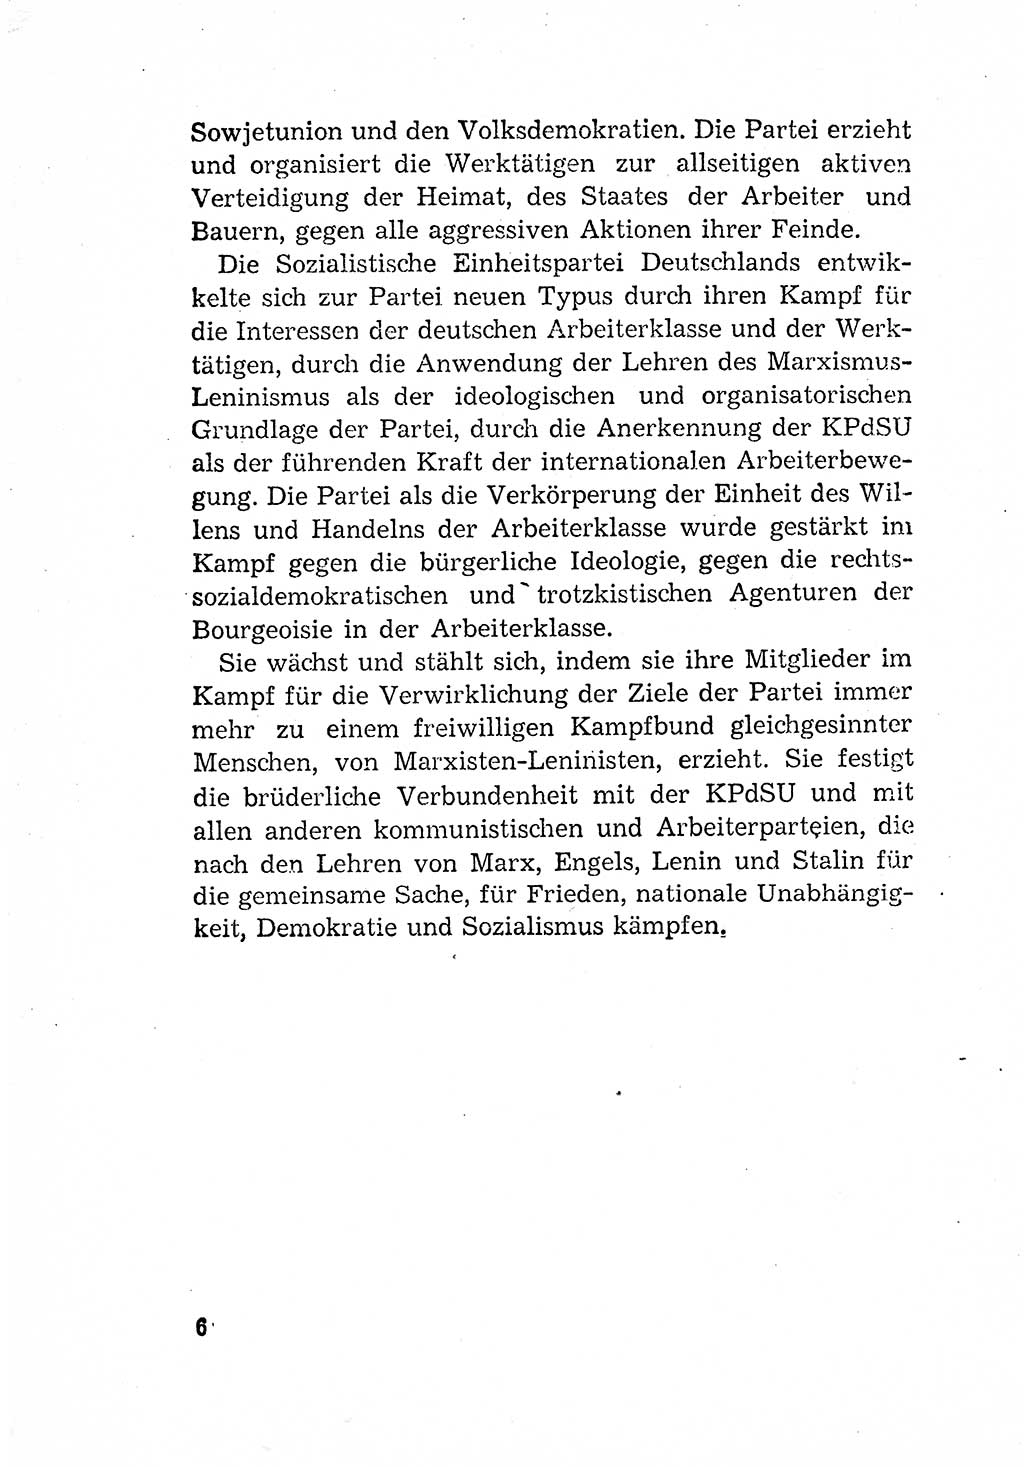 Statut der Sozialistischen Einheitspartei Deutschlands (SED) [Deutsche Demokratische Republik (DDR)] 1958, Seite 6 (St. SED DDR 1958, S. 6)